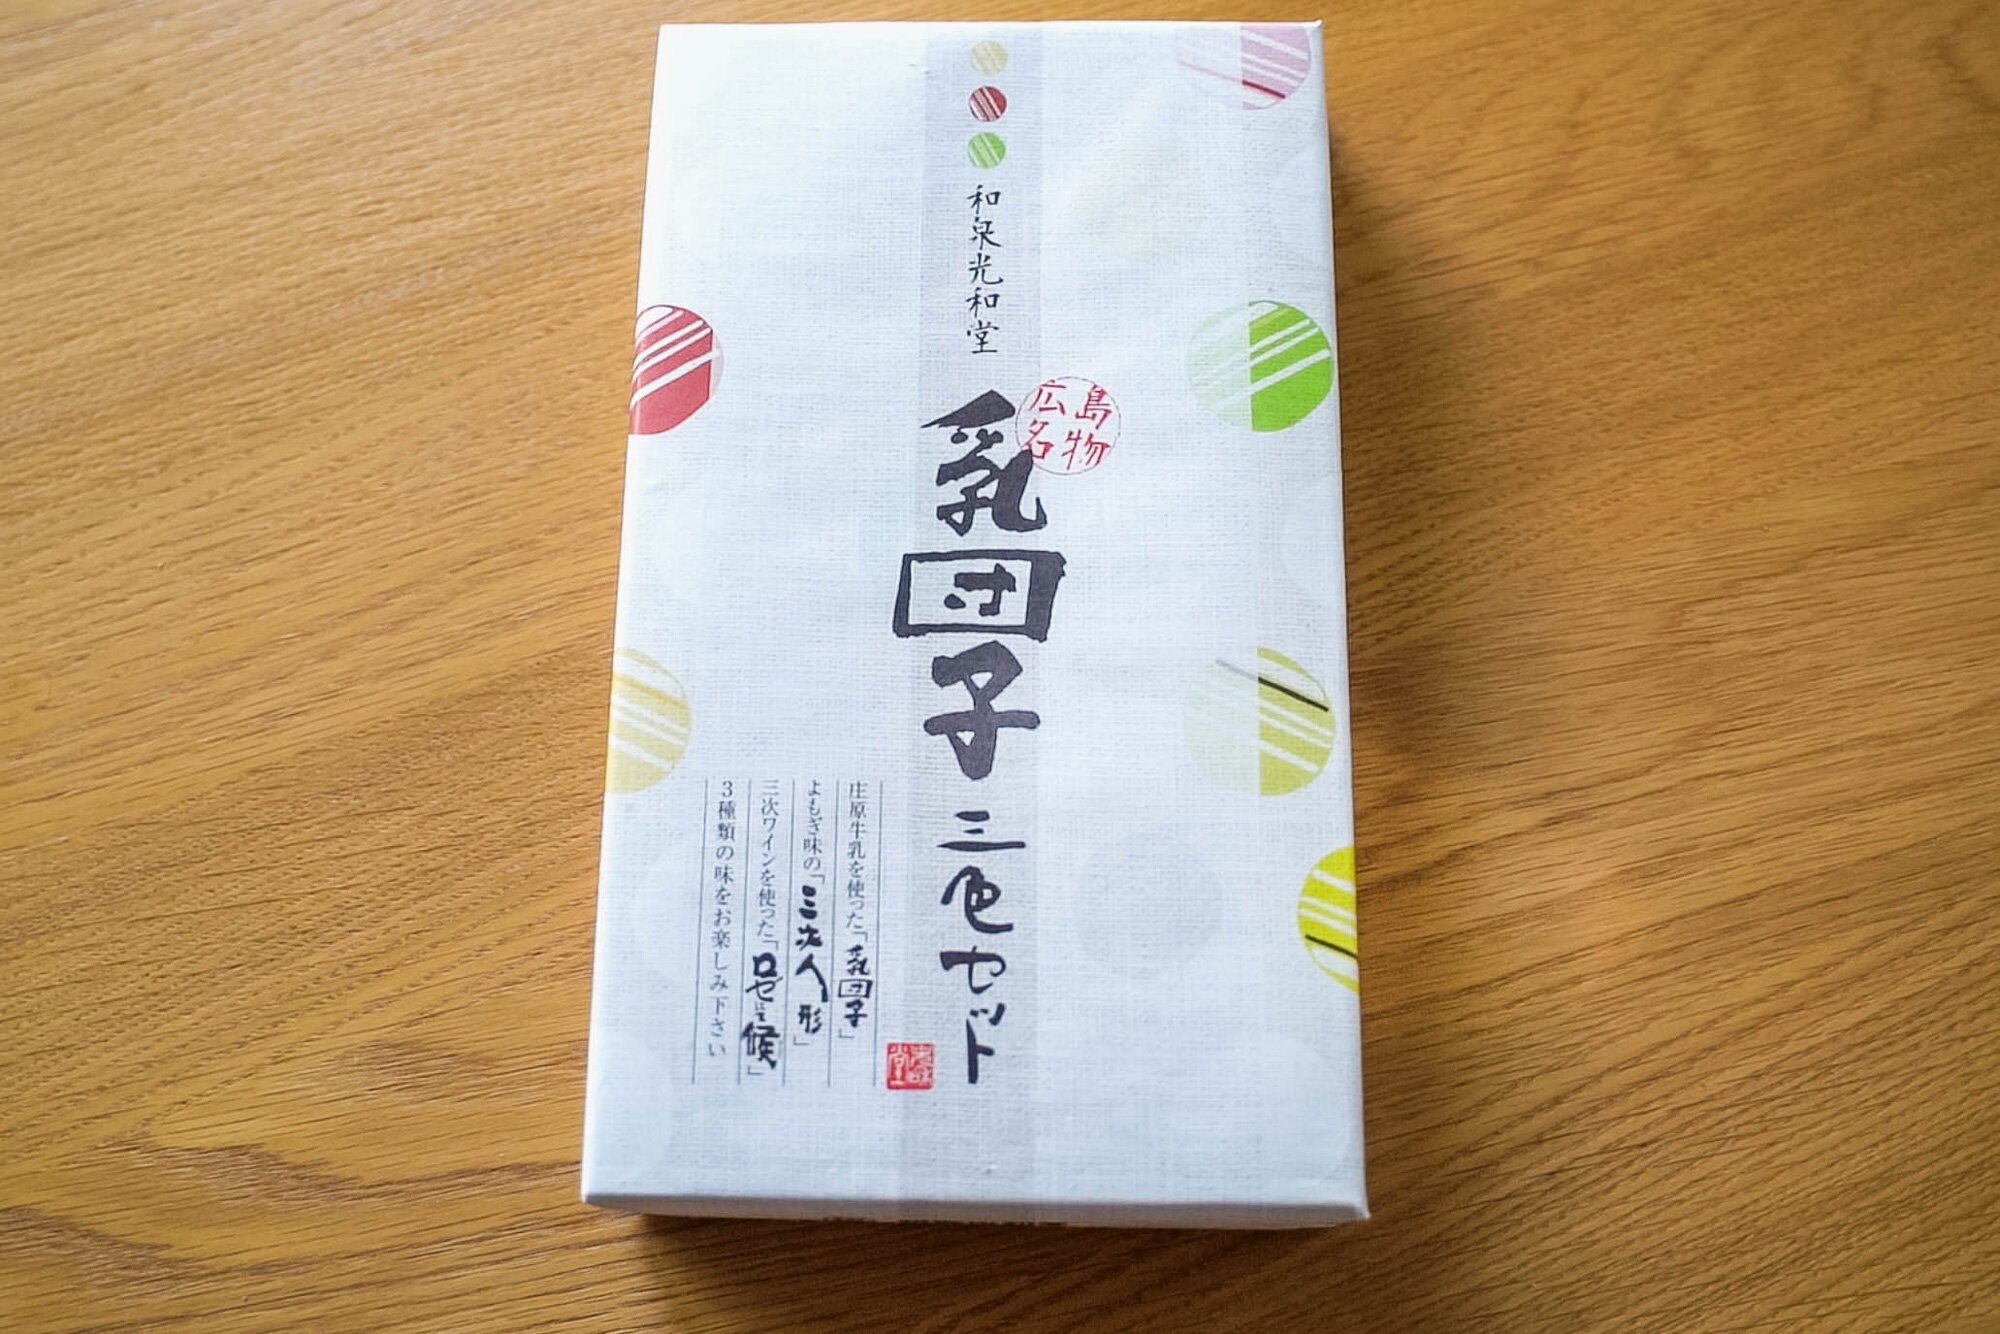 Japanese chichi dango: Box